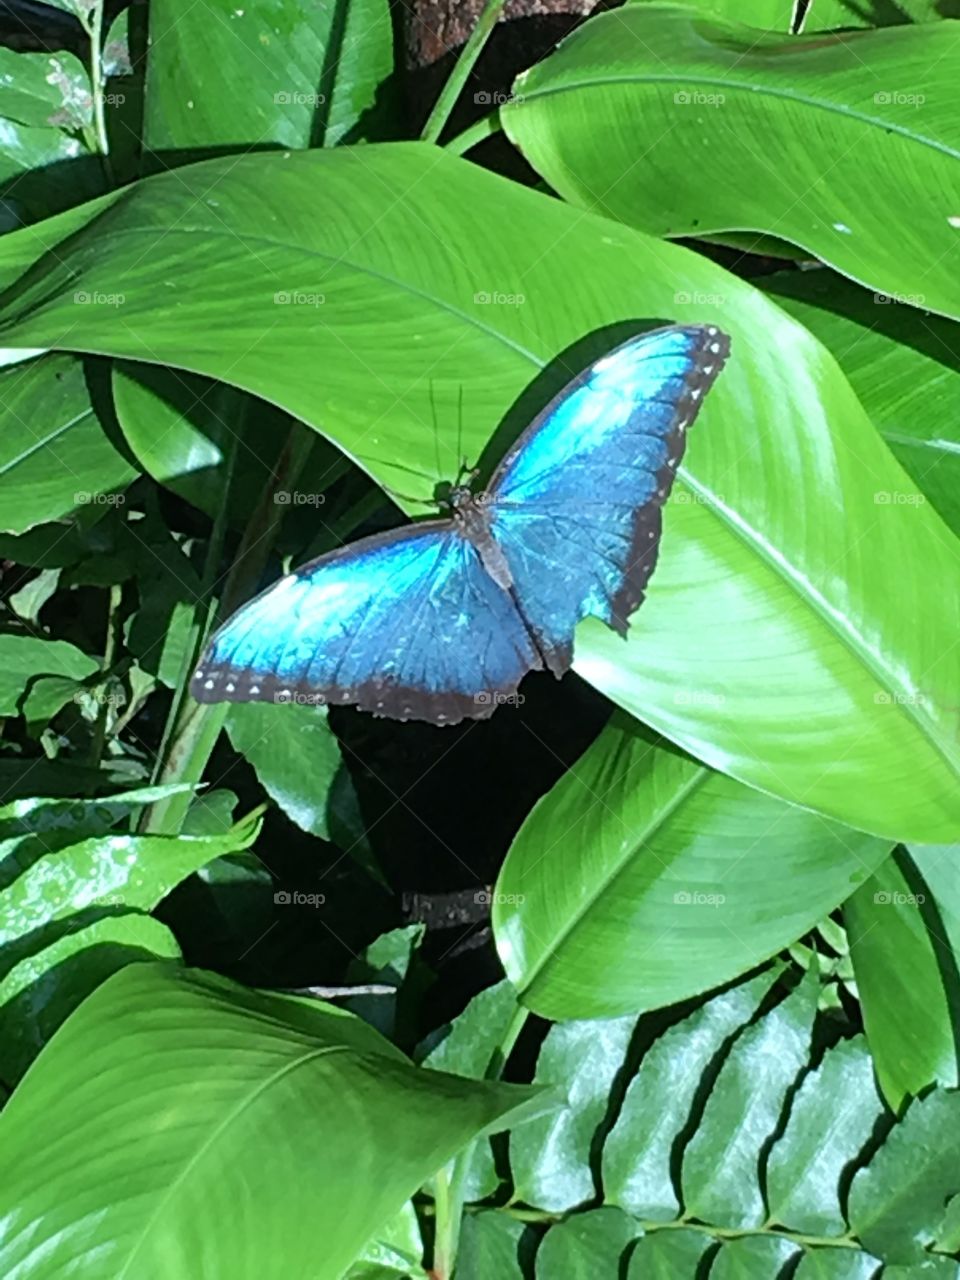 Key West Butterfly Conservatory 